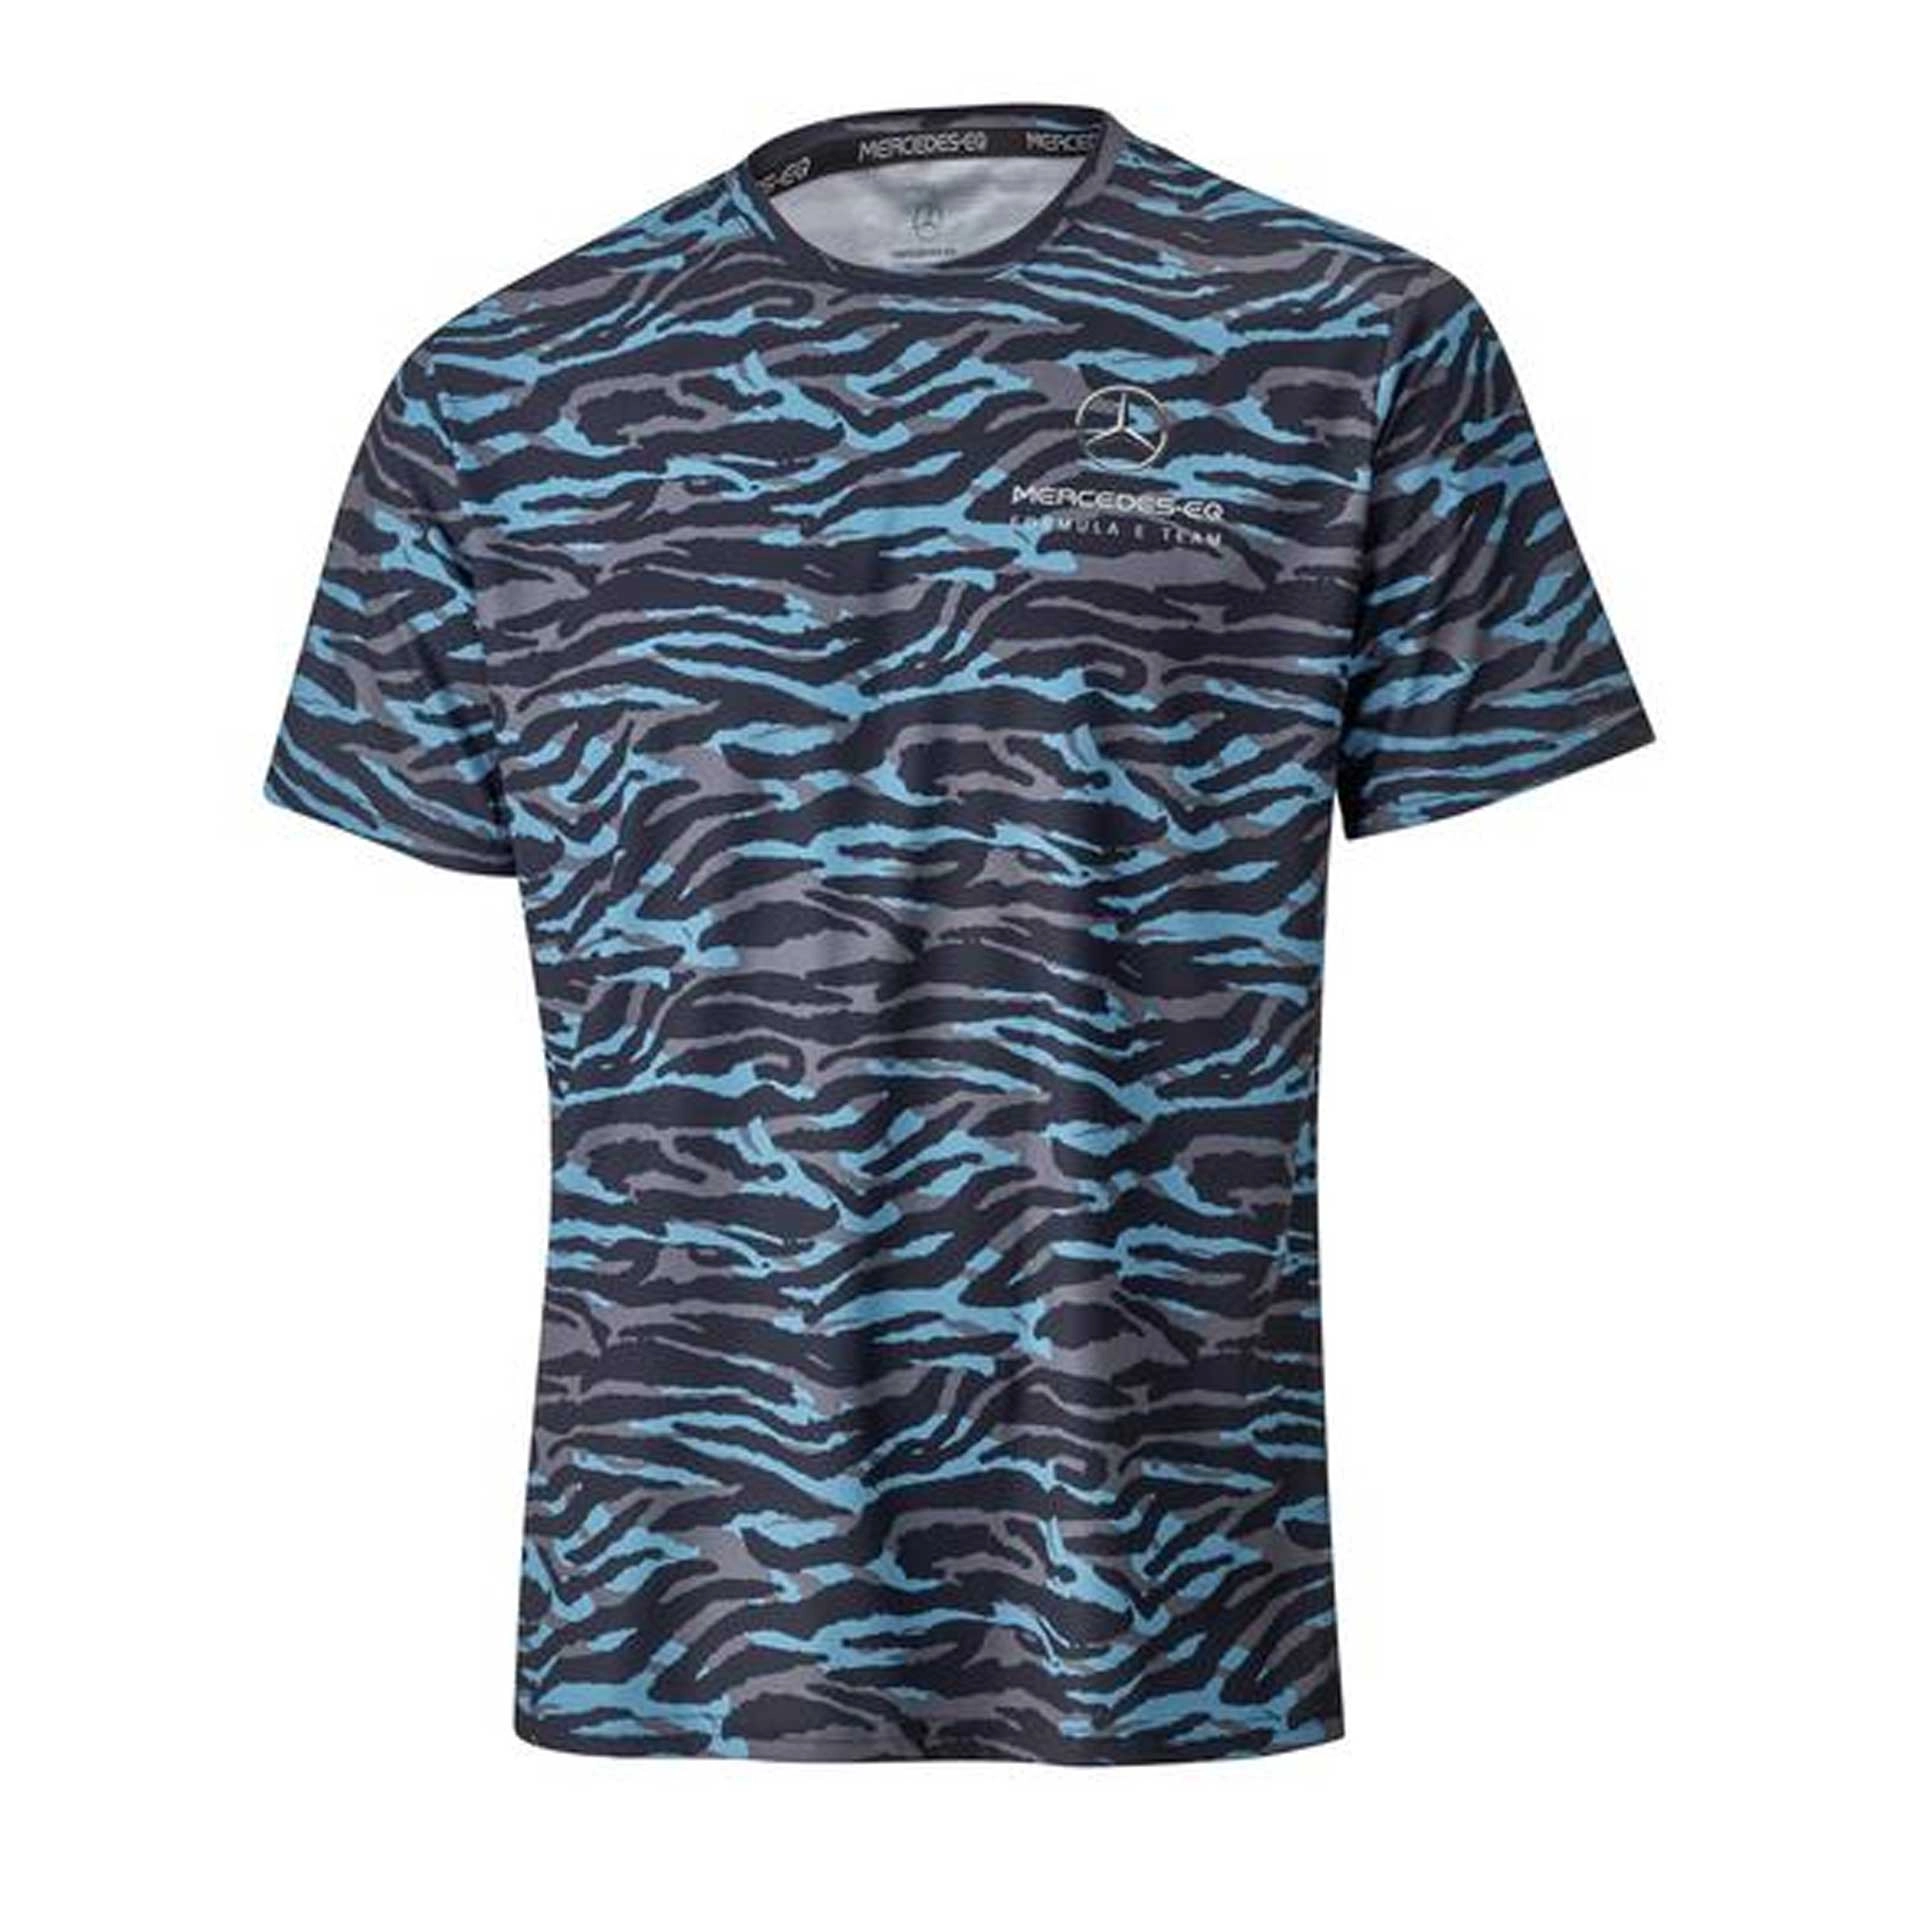 B67997882_mercedes-benz_t-shirt_herren_camouflage_blau_grau_rosier-onlineshop